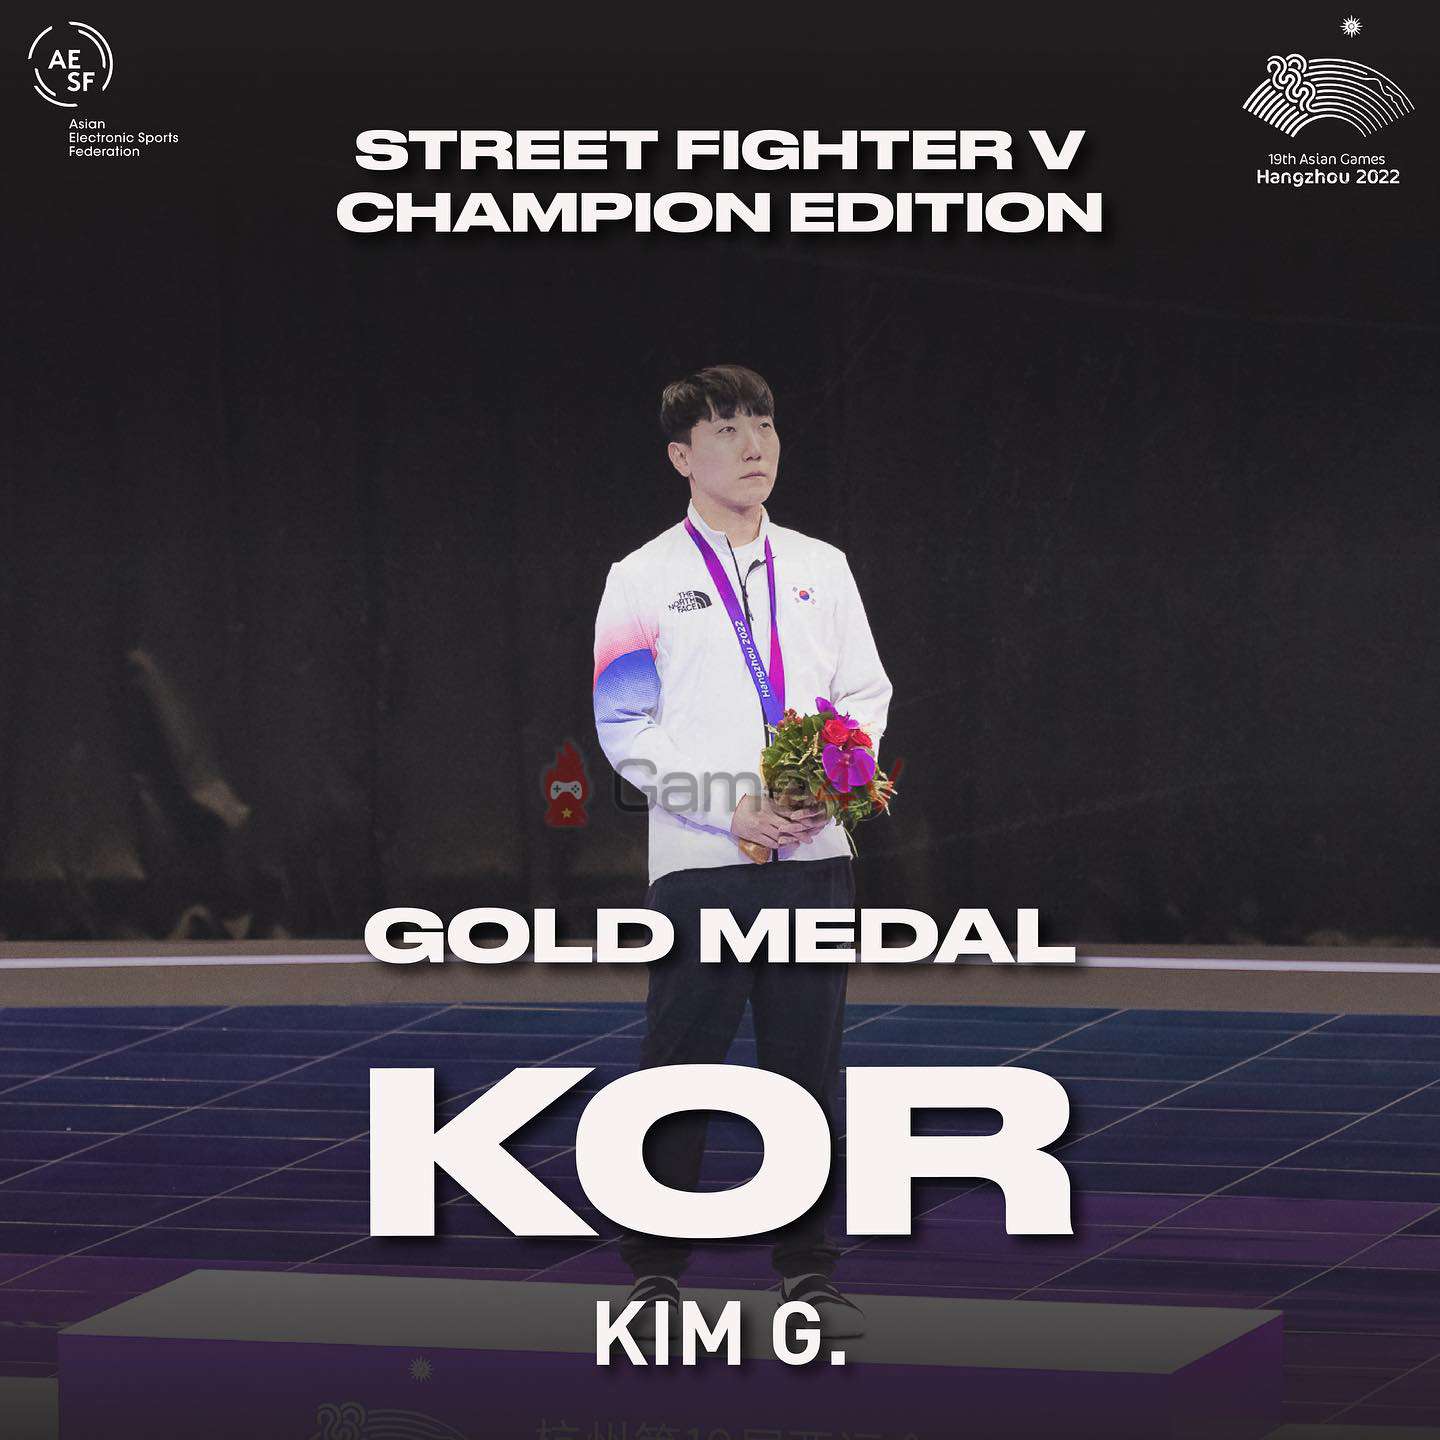 Tuyển thủ Hàn Quốc lên ngôi vô địch bộ môn Street Fighter V (Champion Edition) tại Asian Games 2022.